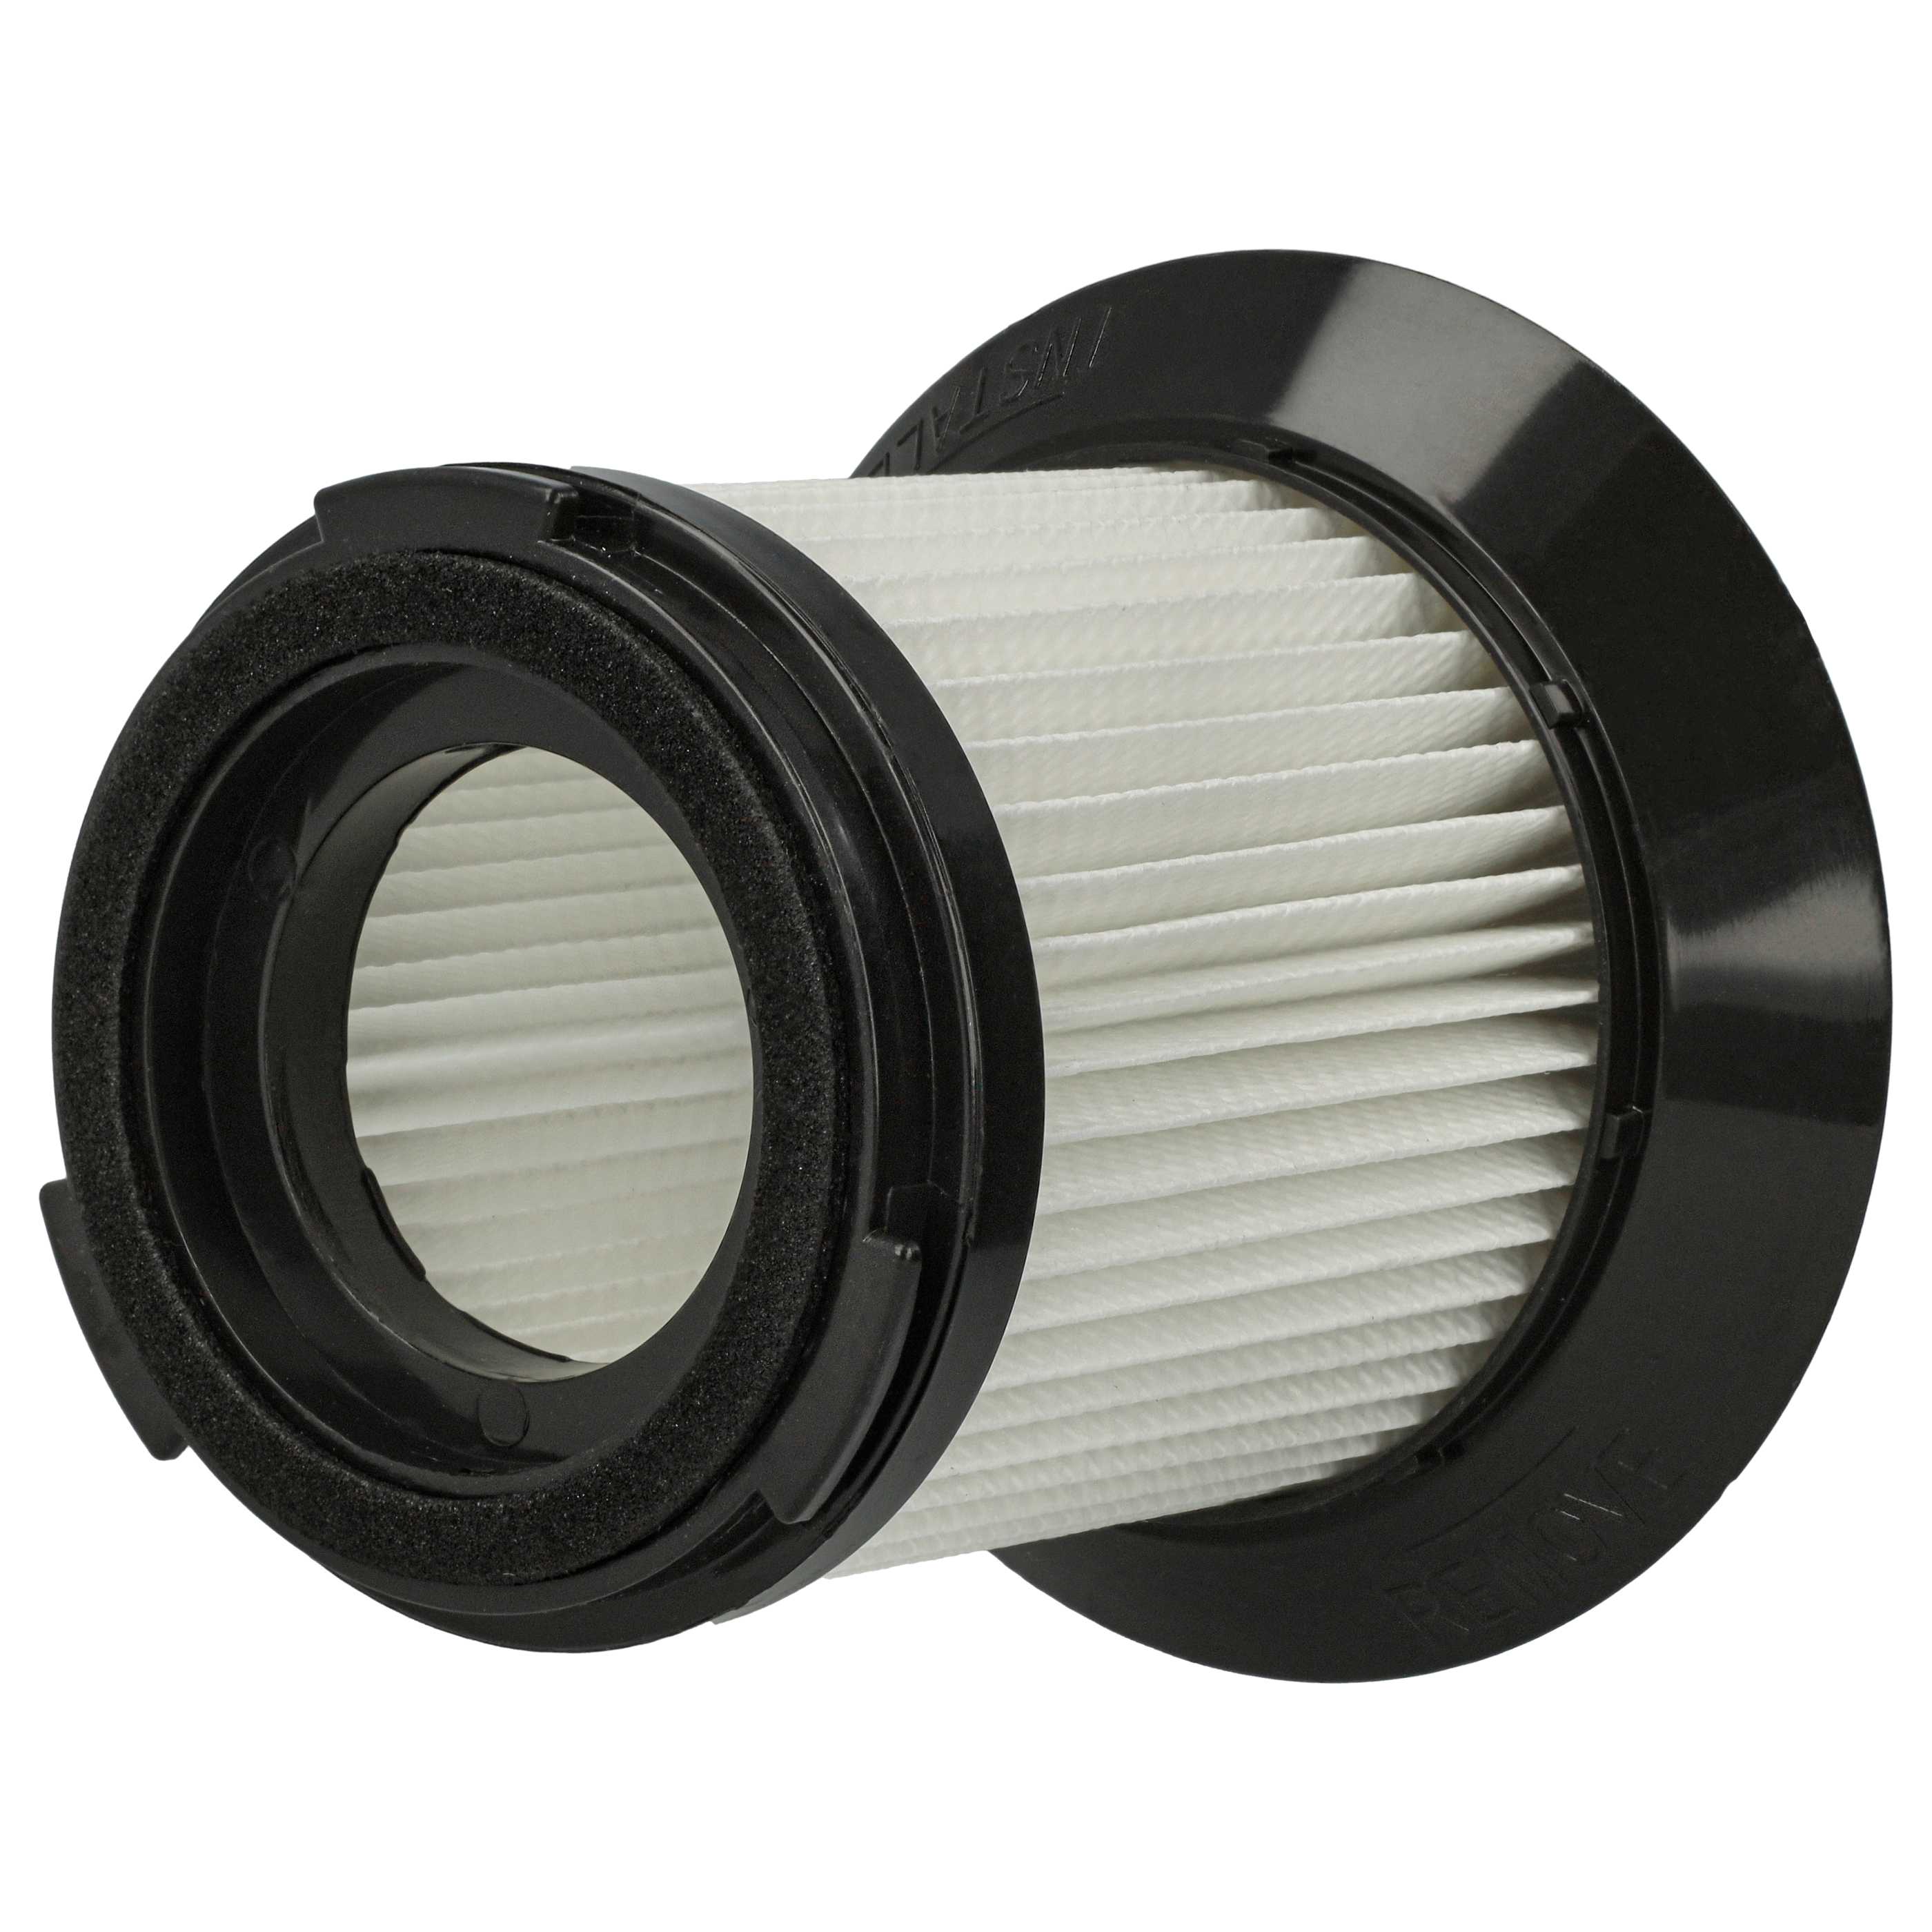 4x Filtres pour aspirateur Sichler Zyklon BLS-200 - filtre HEPA